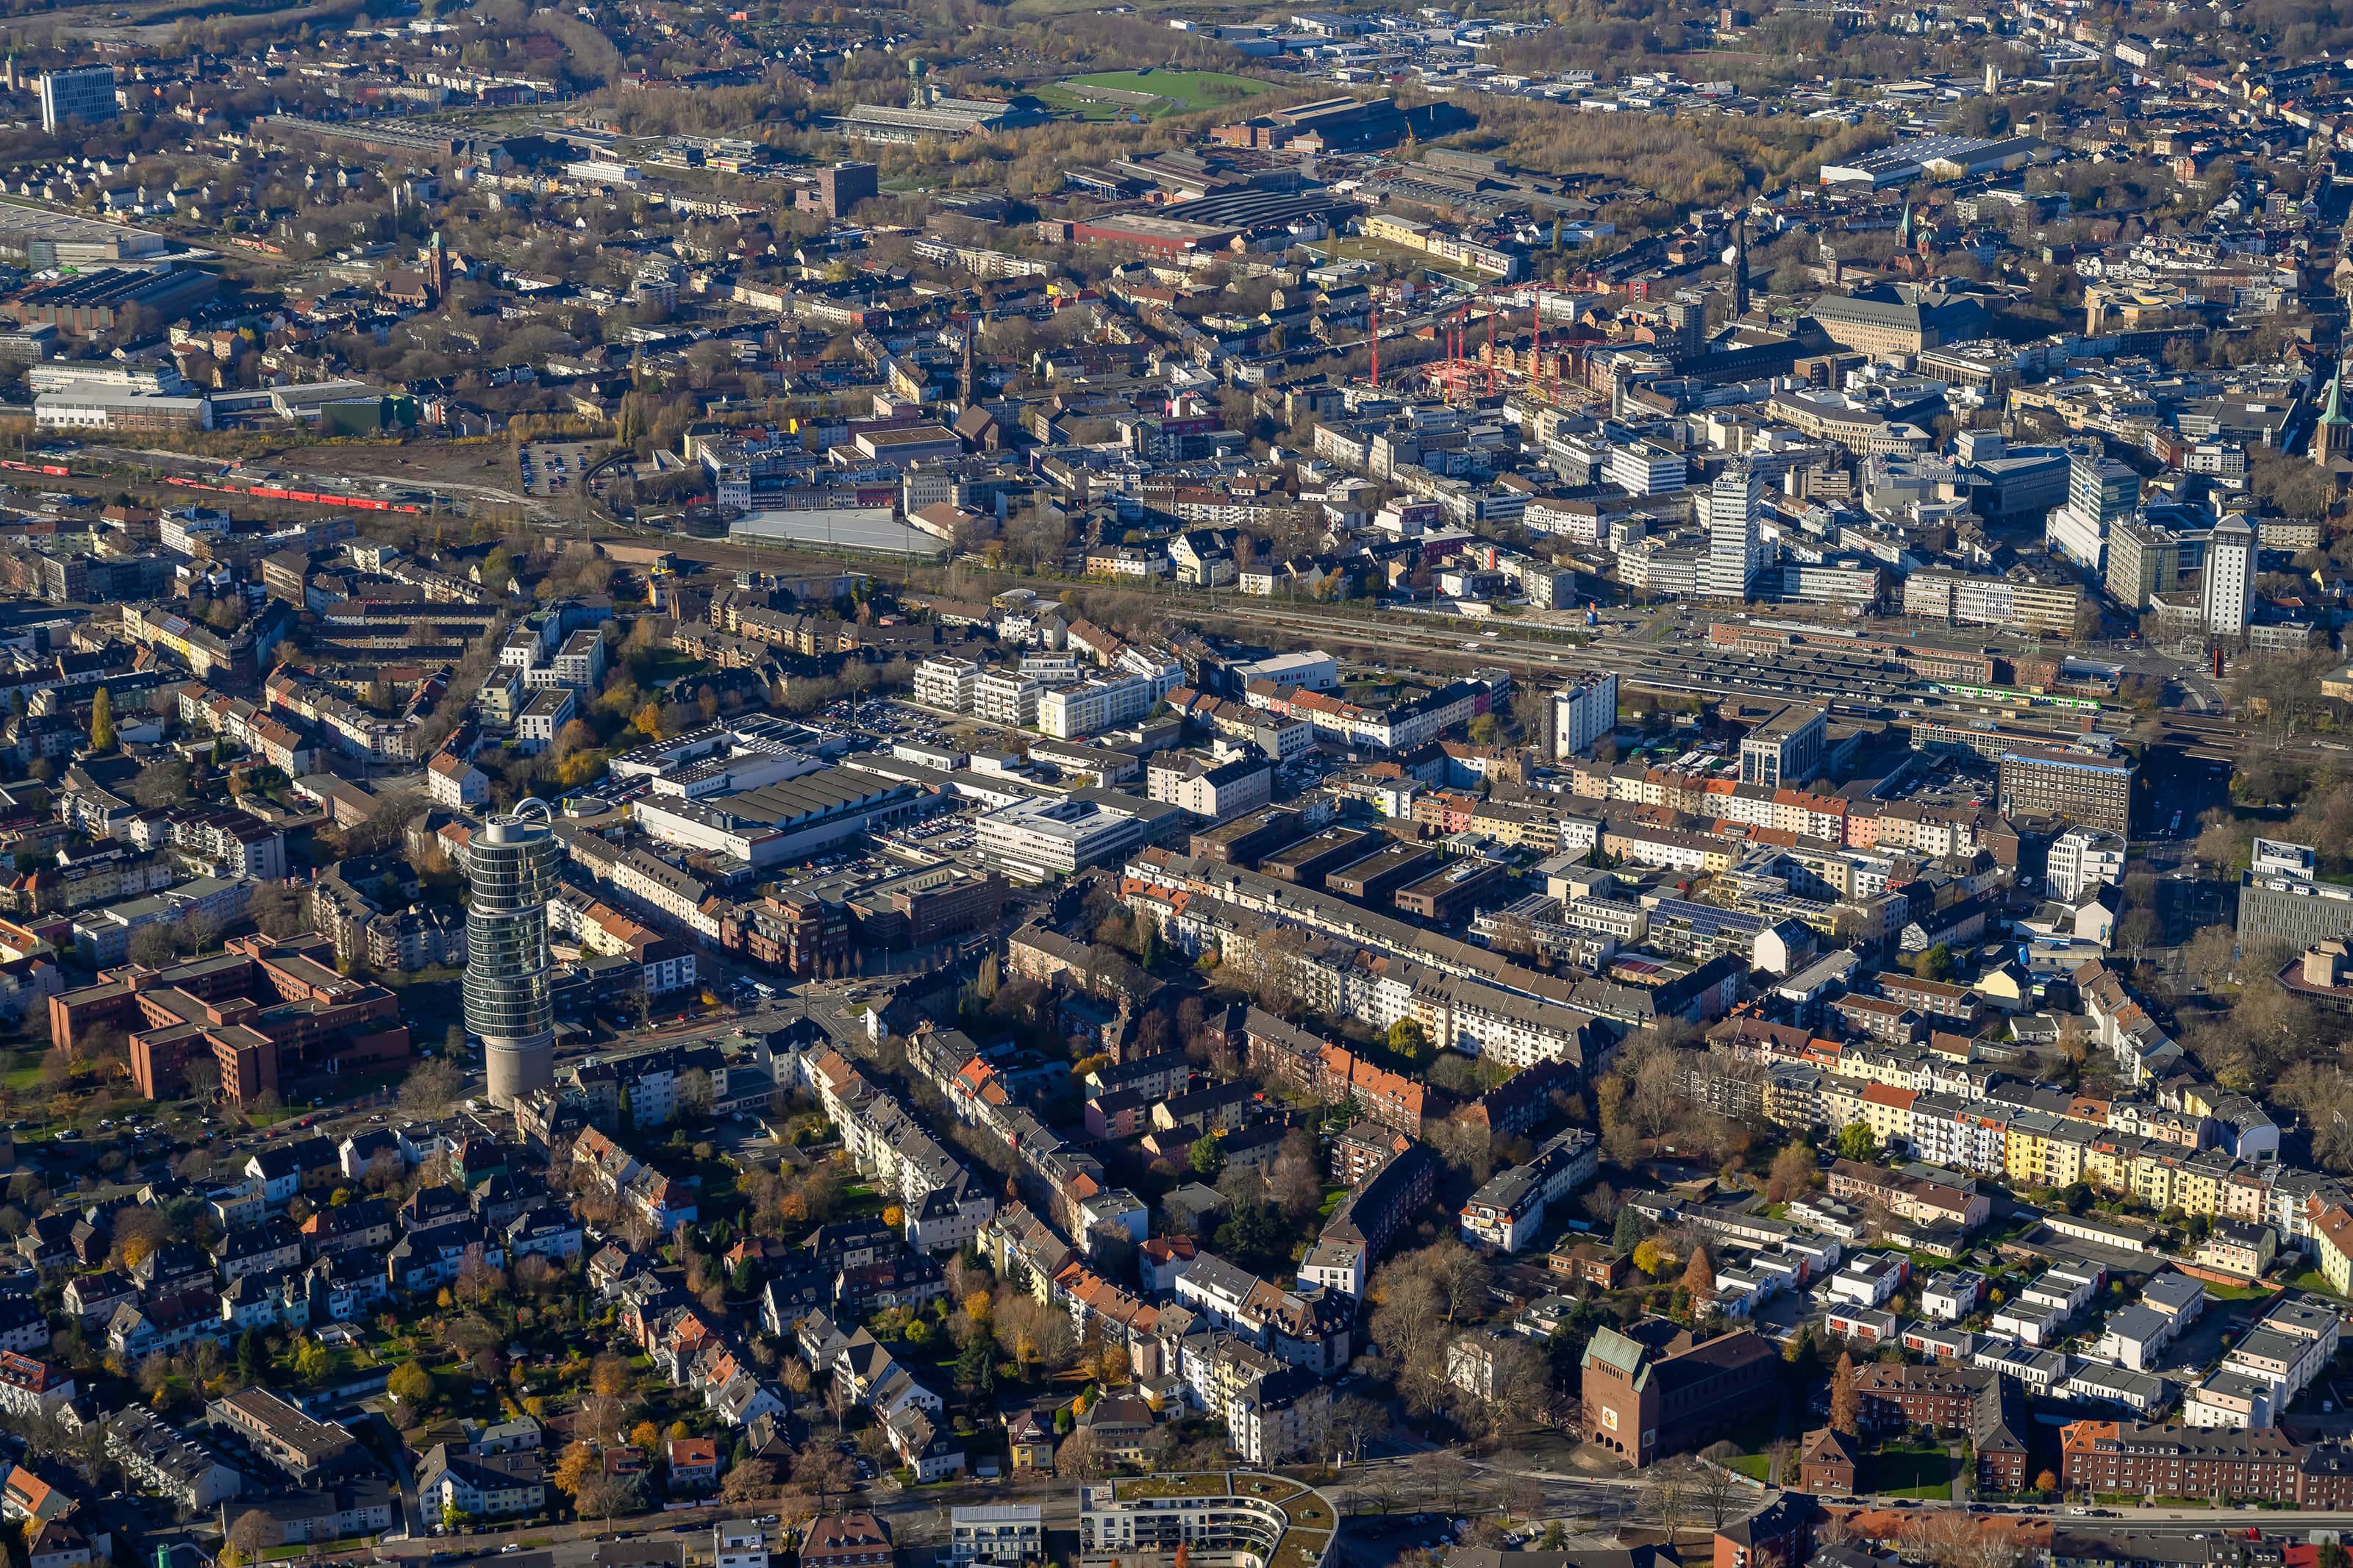 Luftaufnahme der Innenstadt von Bochum